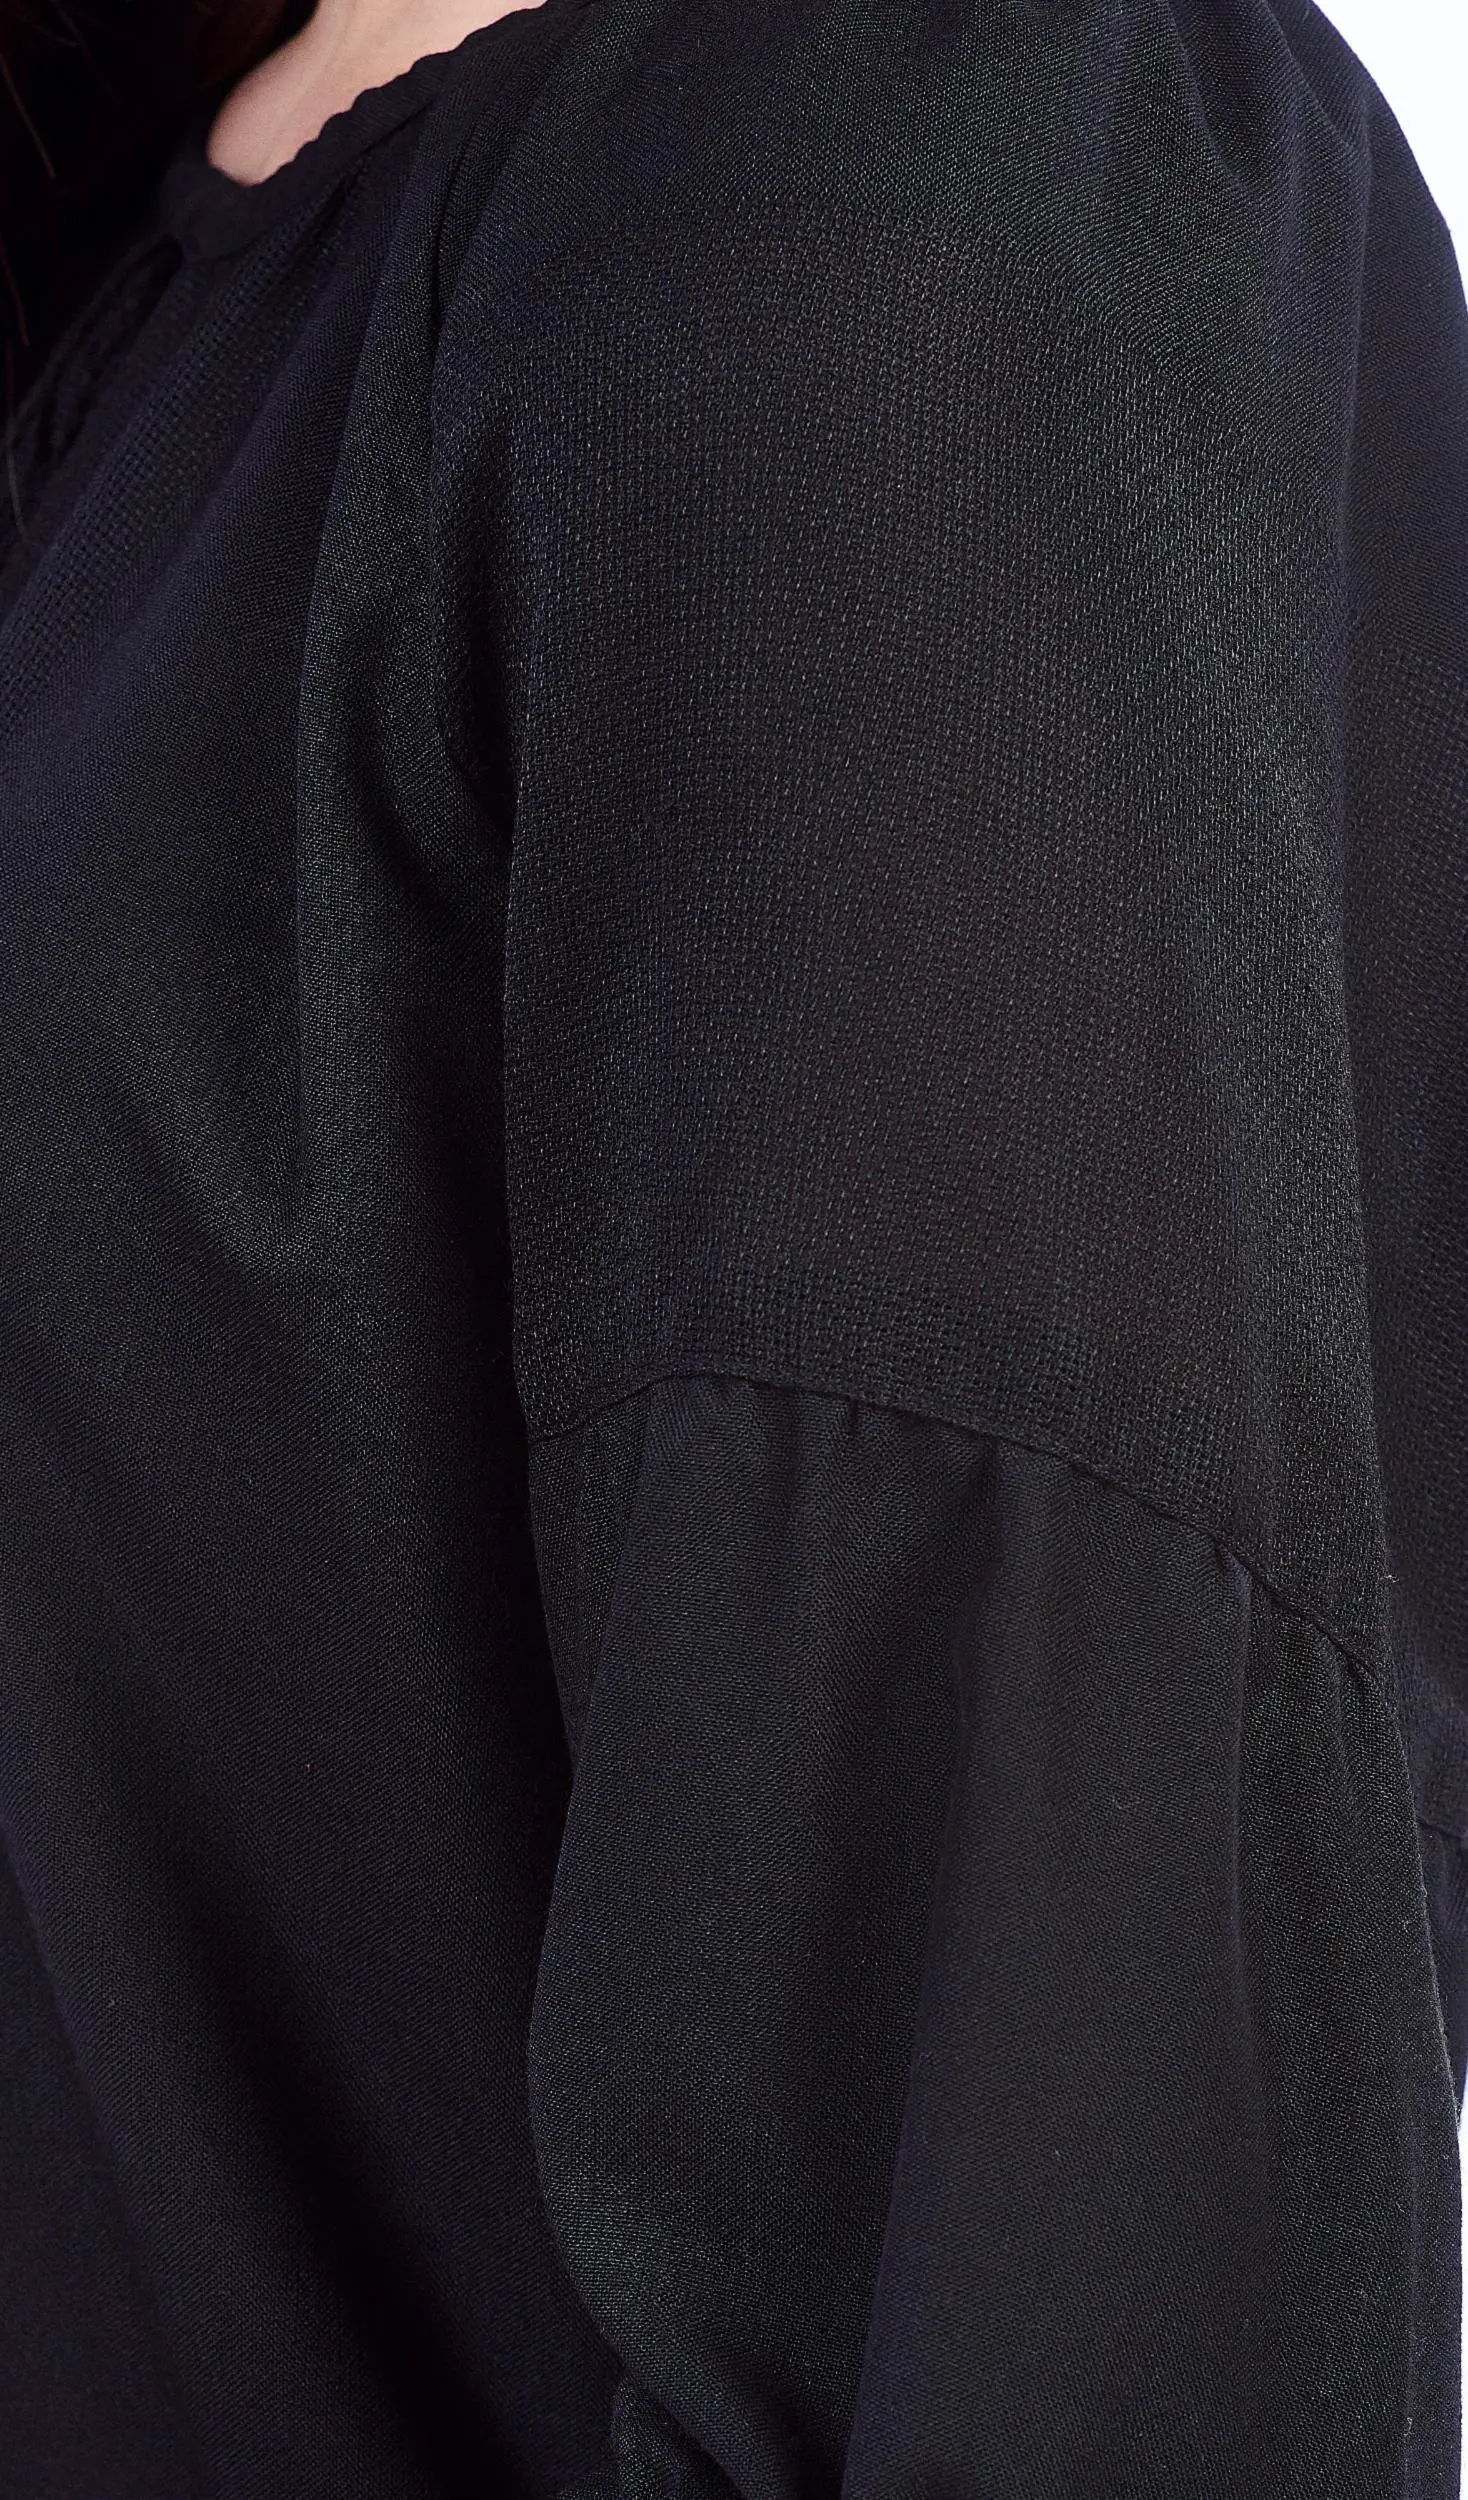 ТПК-172 03-02/09 Сорочка жіноча під вишивку, чорна, 3/4 рукав, розмір 48